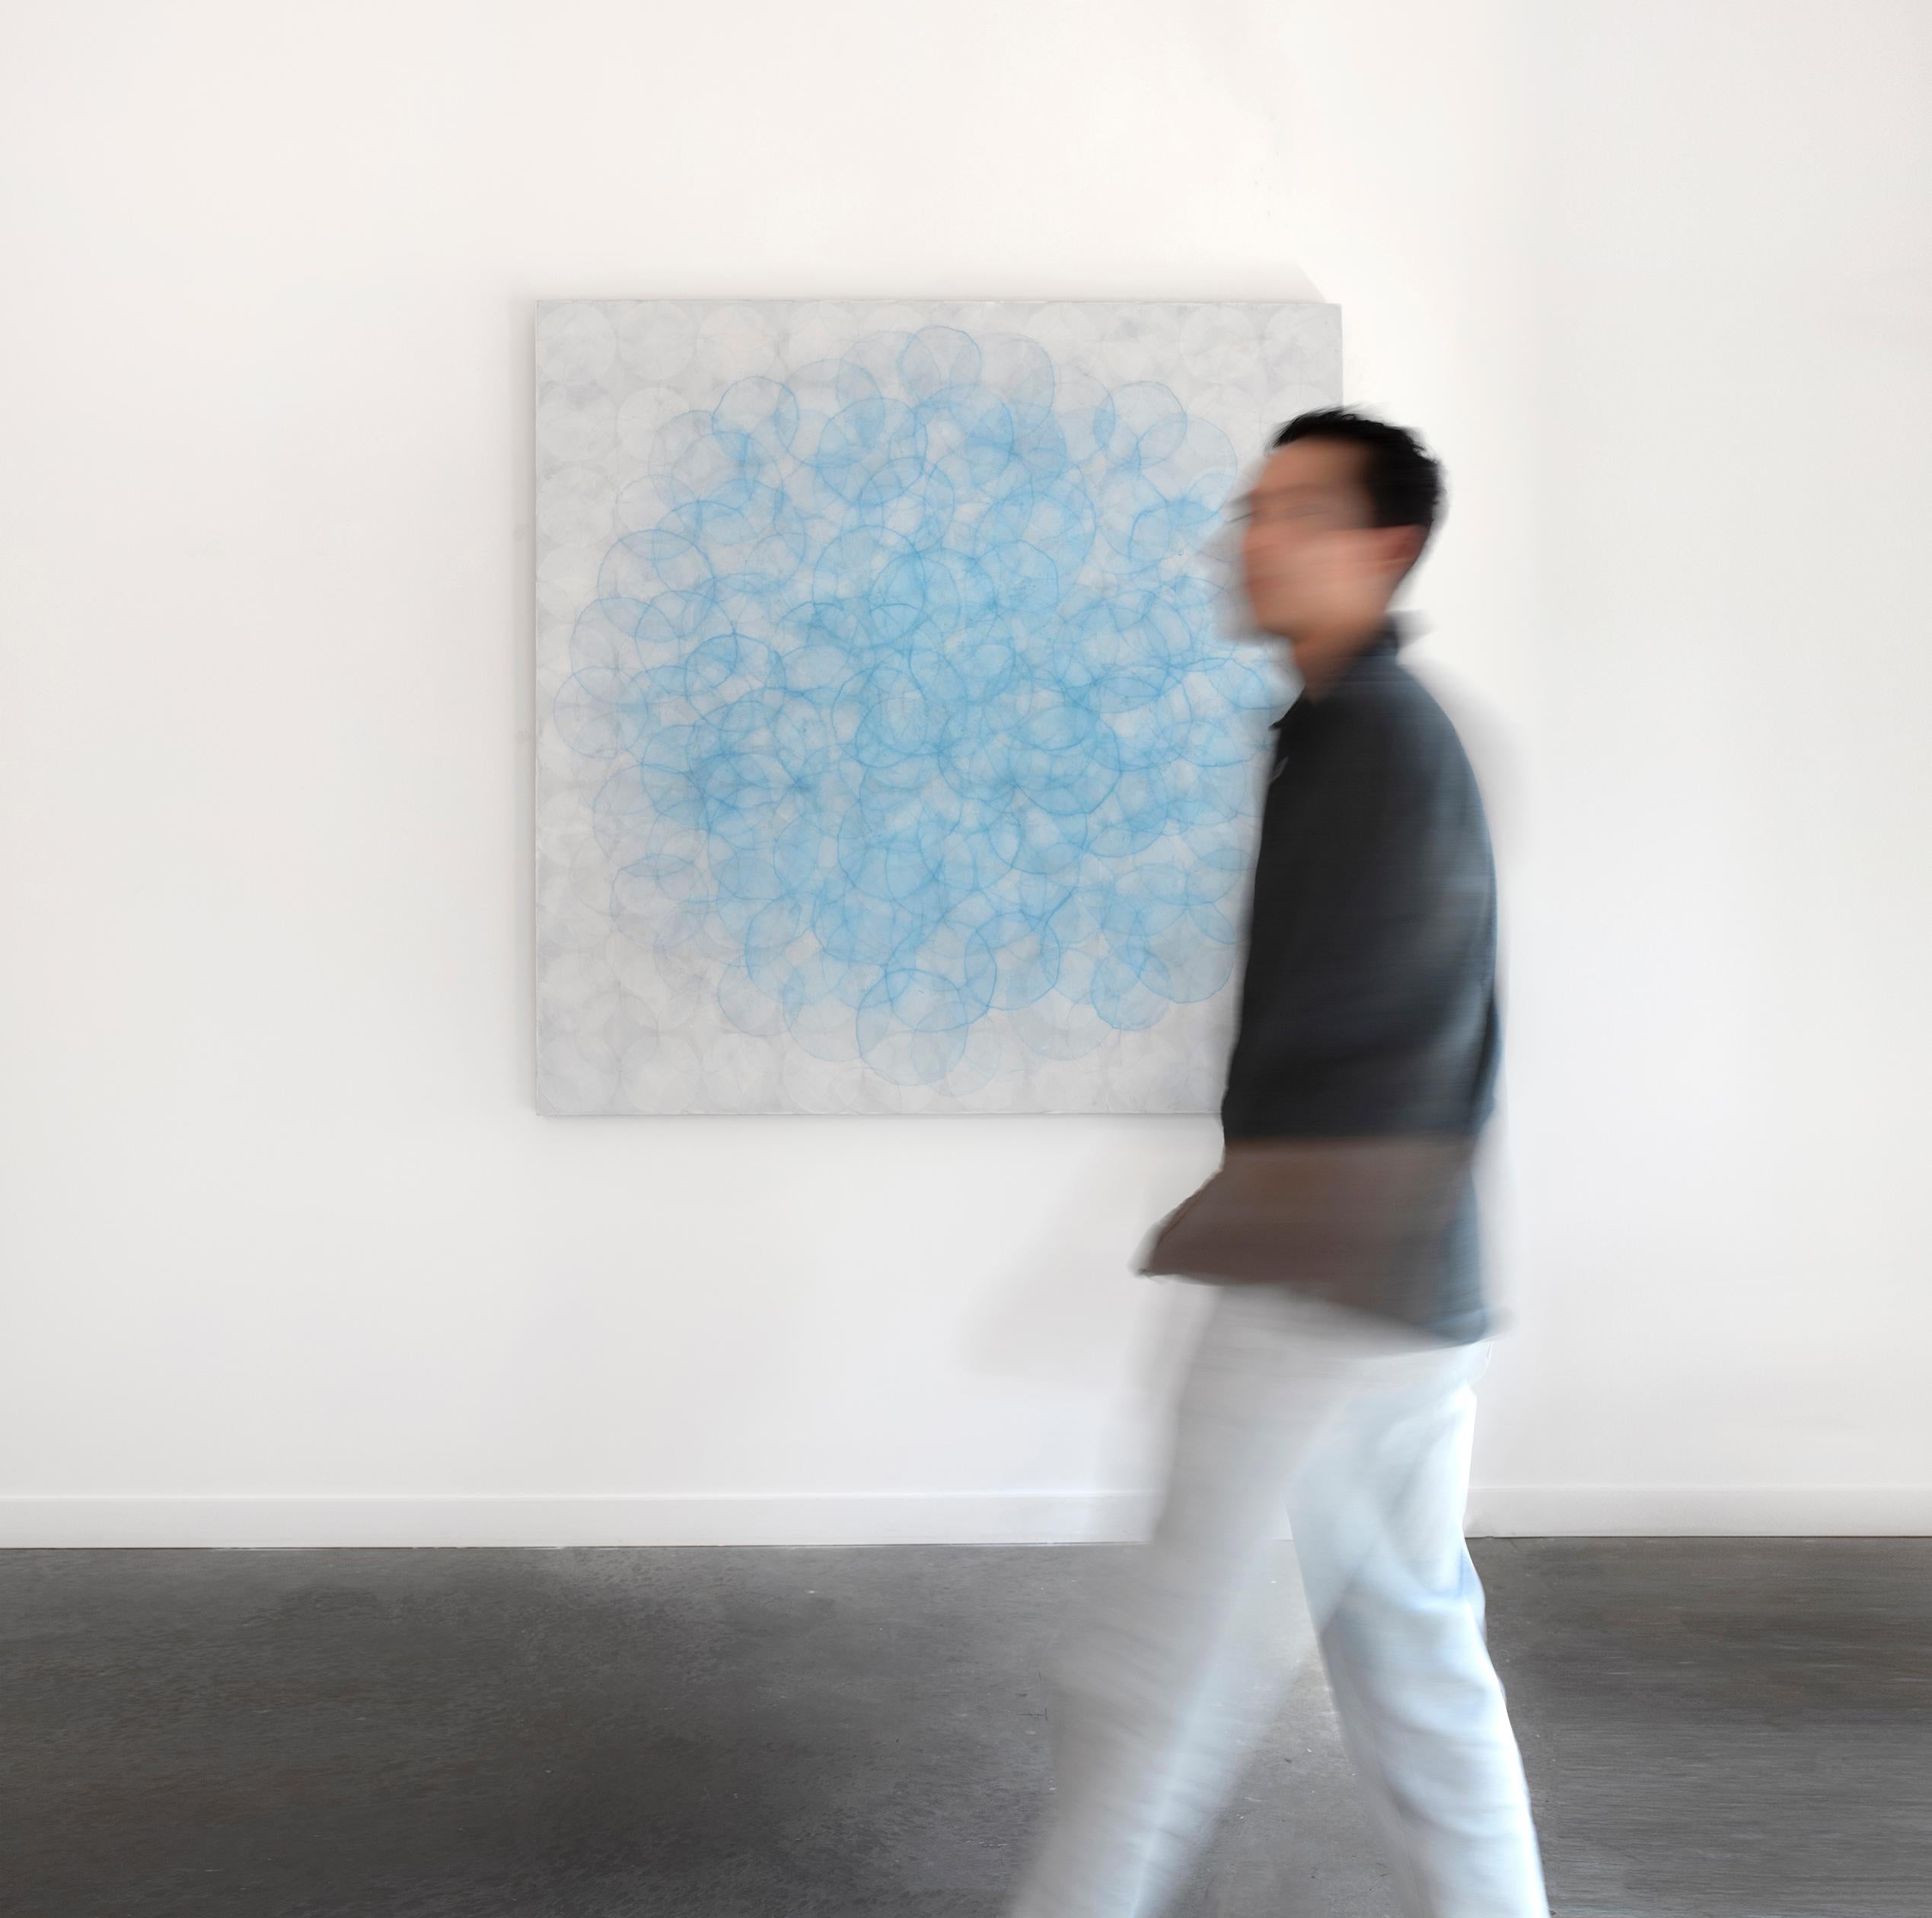 Cette grande peinture abstraite contemporaine de Roger Mudre présente de nombreuses formes circulaires légères, superposées de manière concentrique, dans une palette de bleu et d'argent. L'œuvre est réalisée avec de la peinture acrylique sur de la